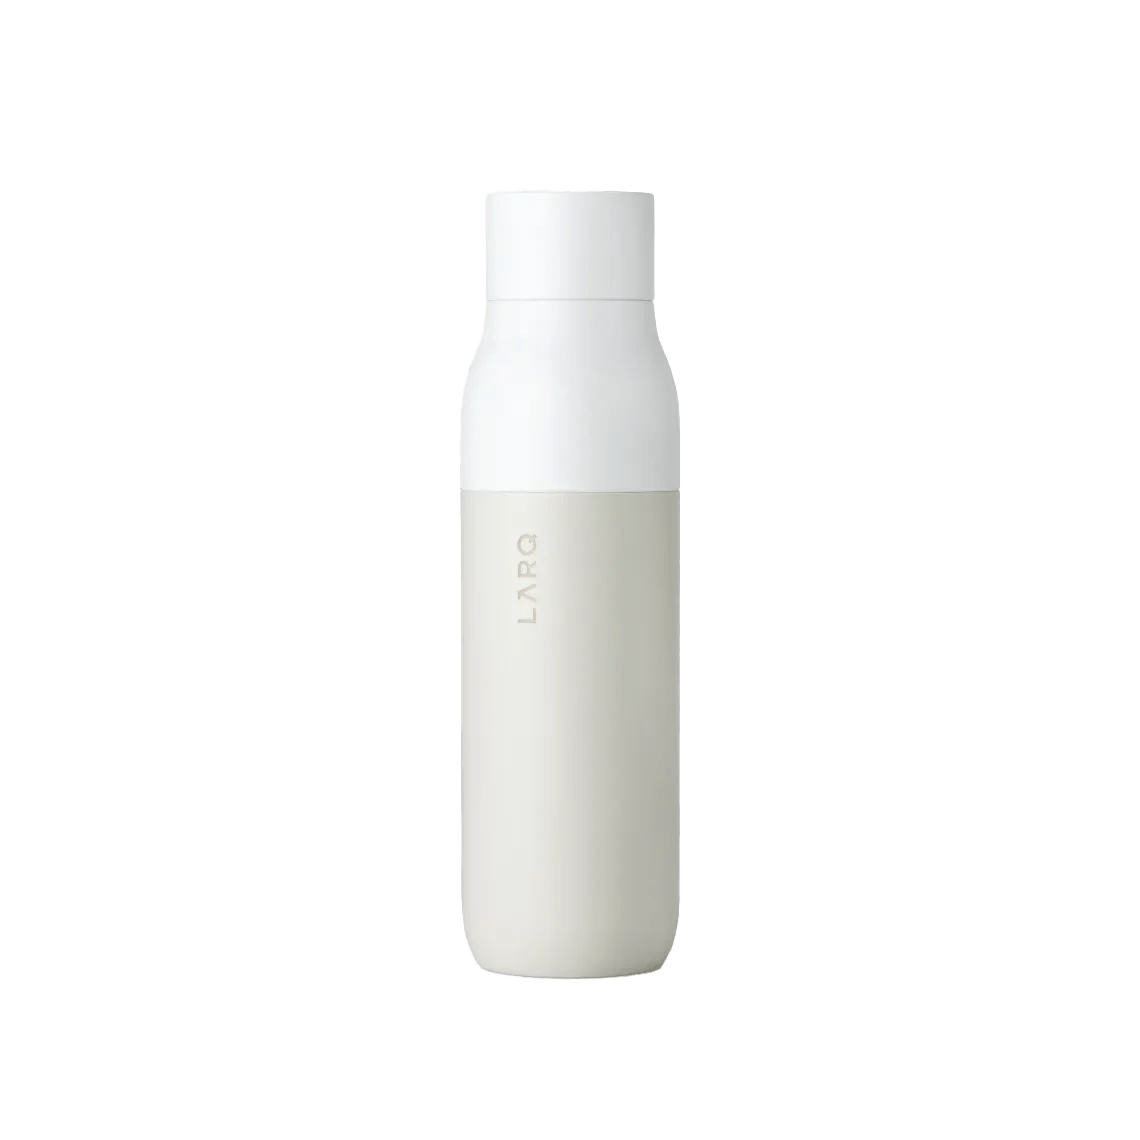 LARQ Self Cleaning Water Bottle 500ml